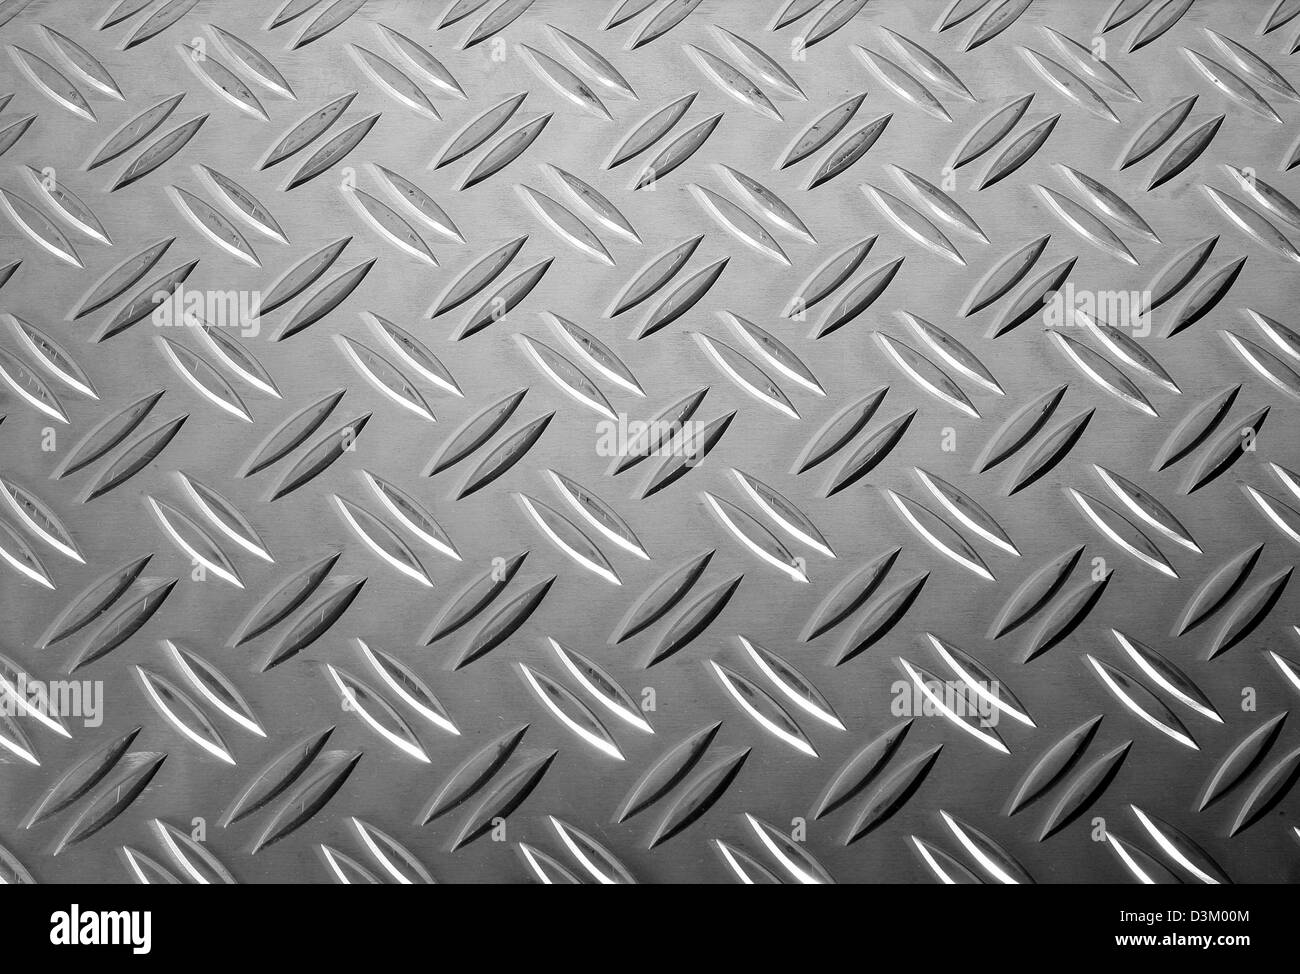 (Dpa) - die Bild-Shóws Anti-Rutsch-Stein-Platte, die als Beschichtung für Böden und Treppen verwendet wird im Bild 22. August 2005. Foto: Heiko Wolfraum Stockfoto